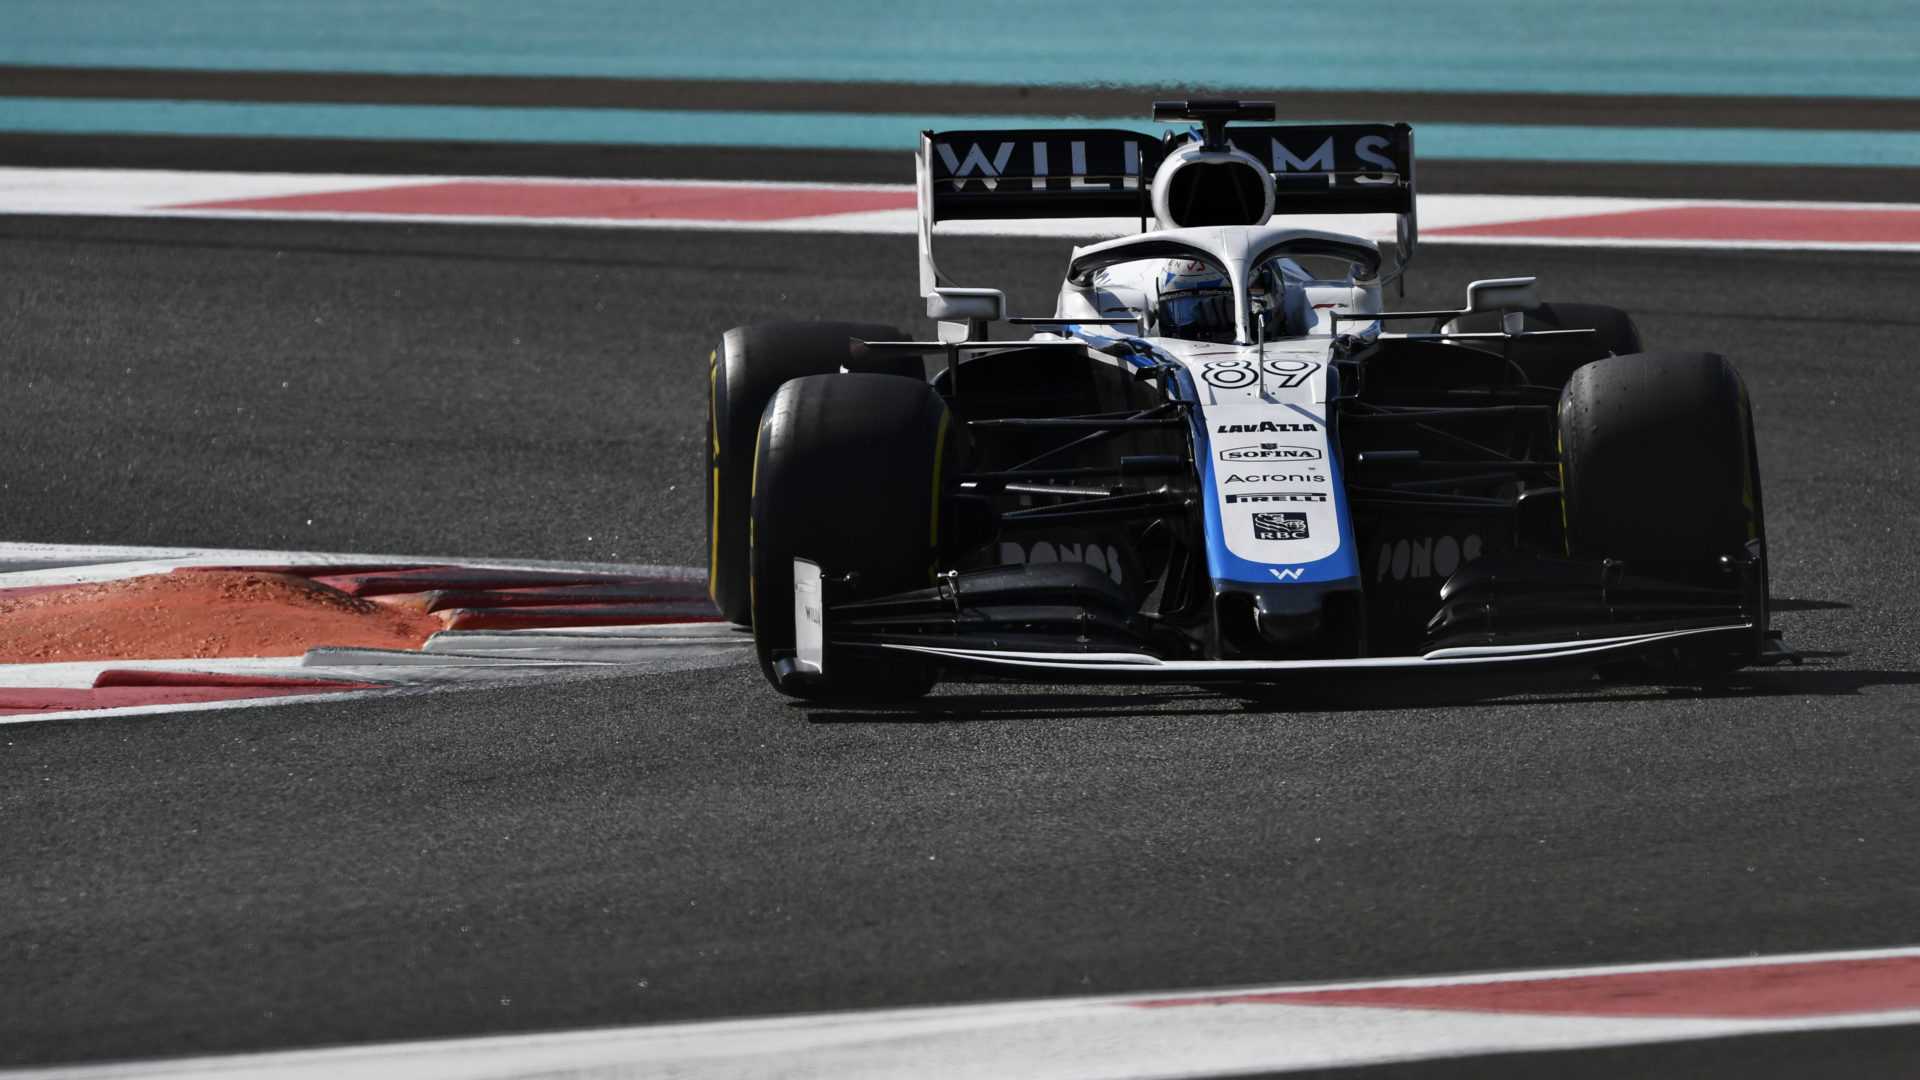 F1 Twitter réagit à la toute nouvelle livrée de Williams Racing 2021